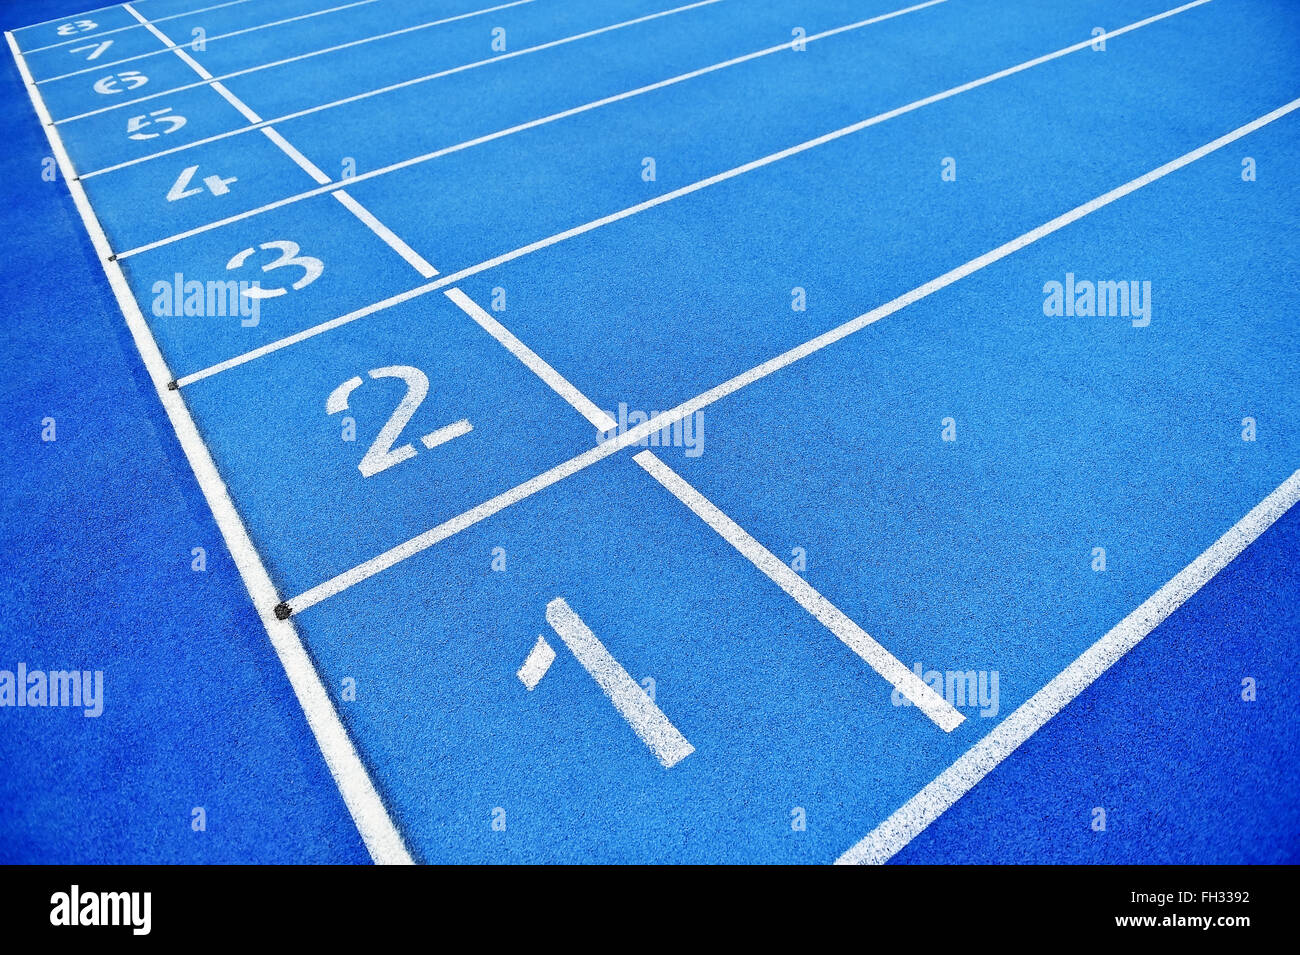 Blaue Leichtathletik Sprint Ziellinie Positionen ohne Personen Stockfoto